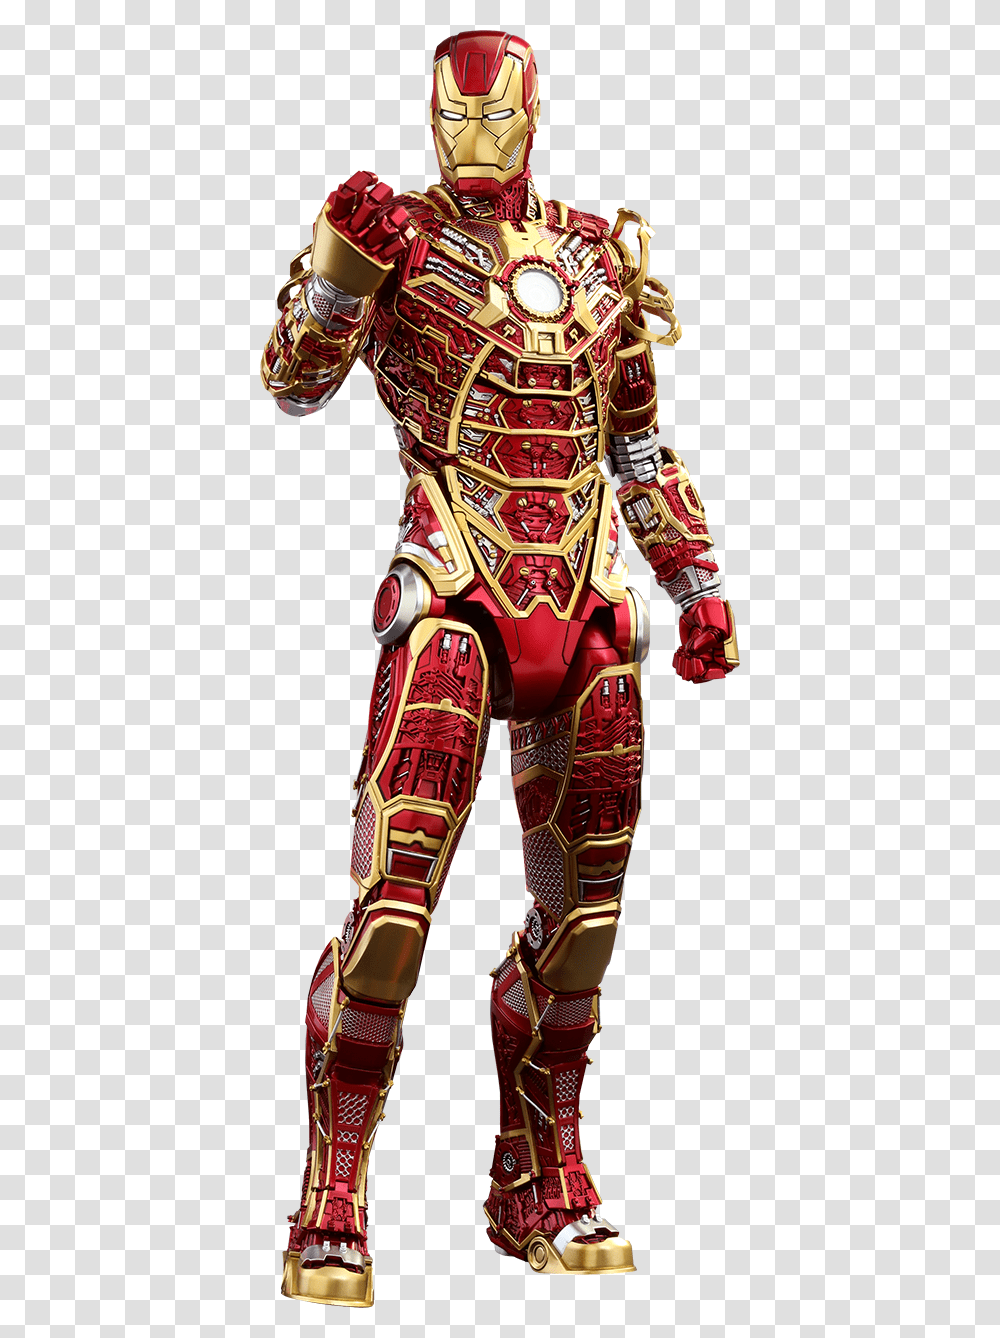 Iron Man Mark 41 Suit, Robot, Toy Transparent Png